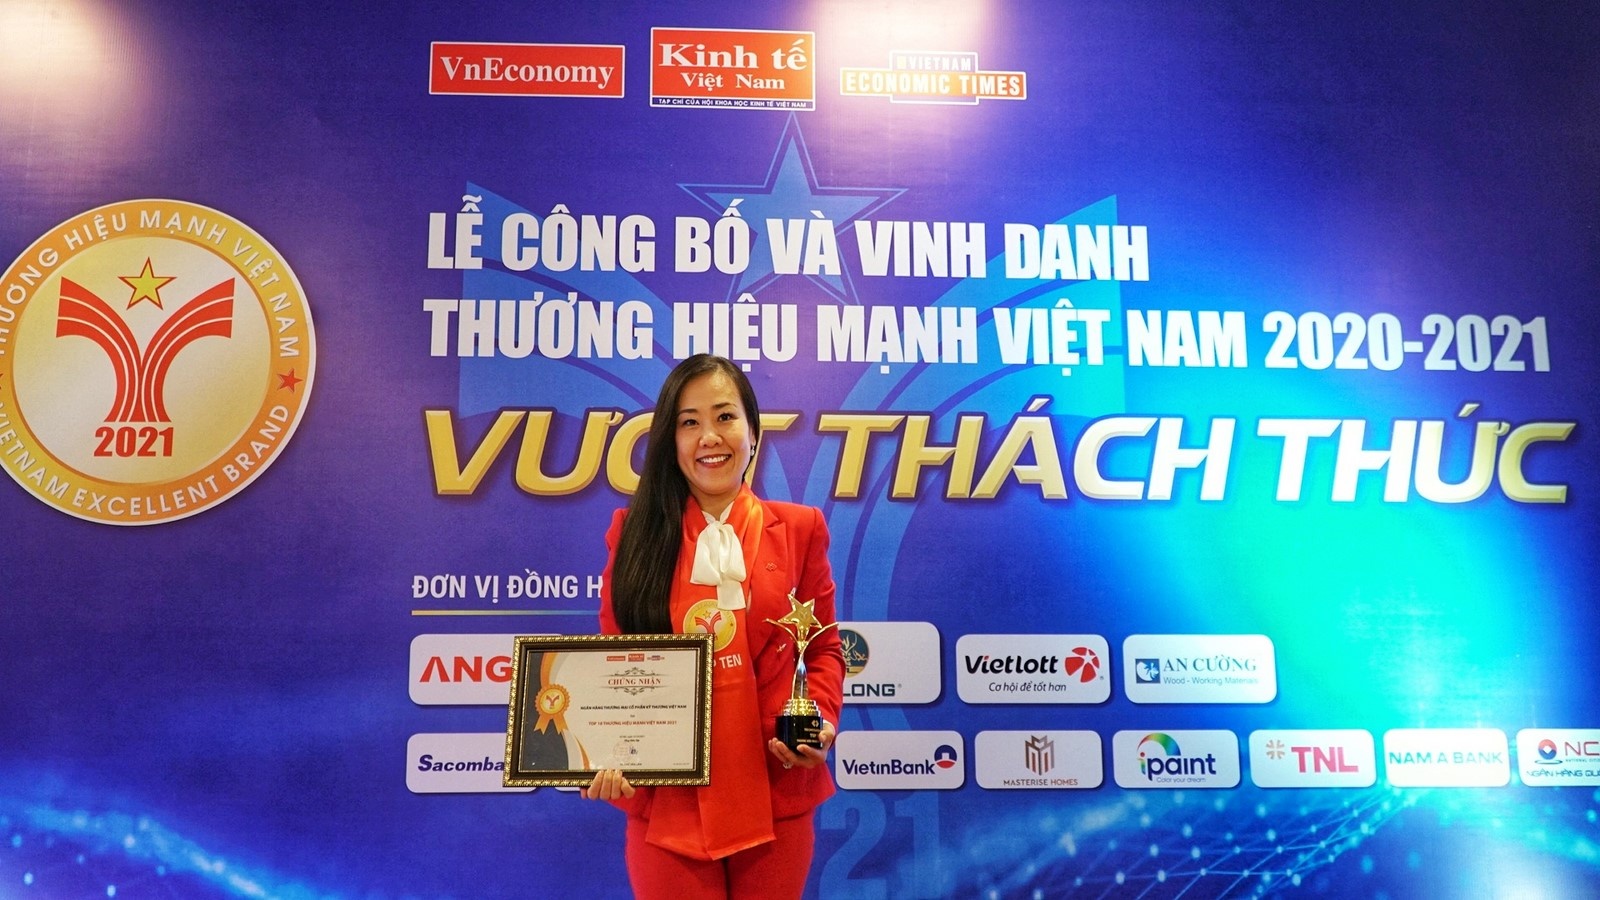 Techcombank top 10 thương hiệu mạnh Việt Nam 2021